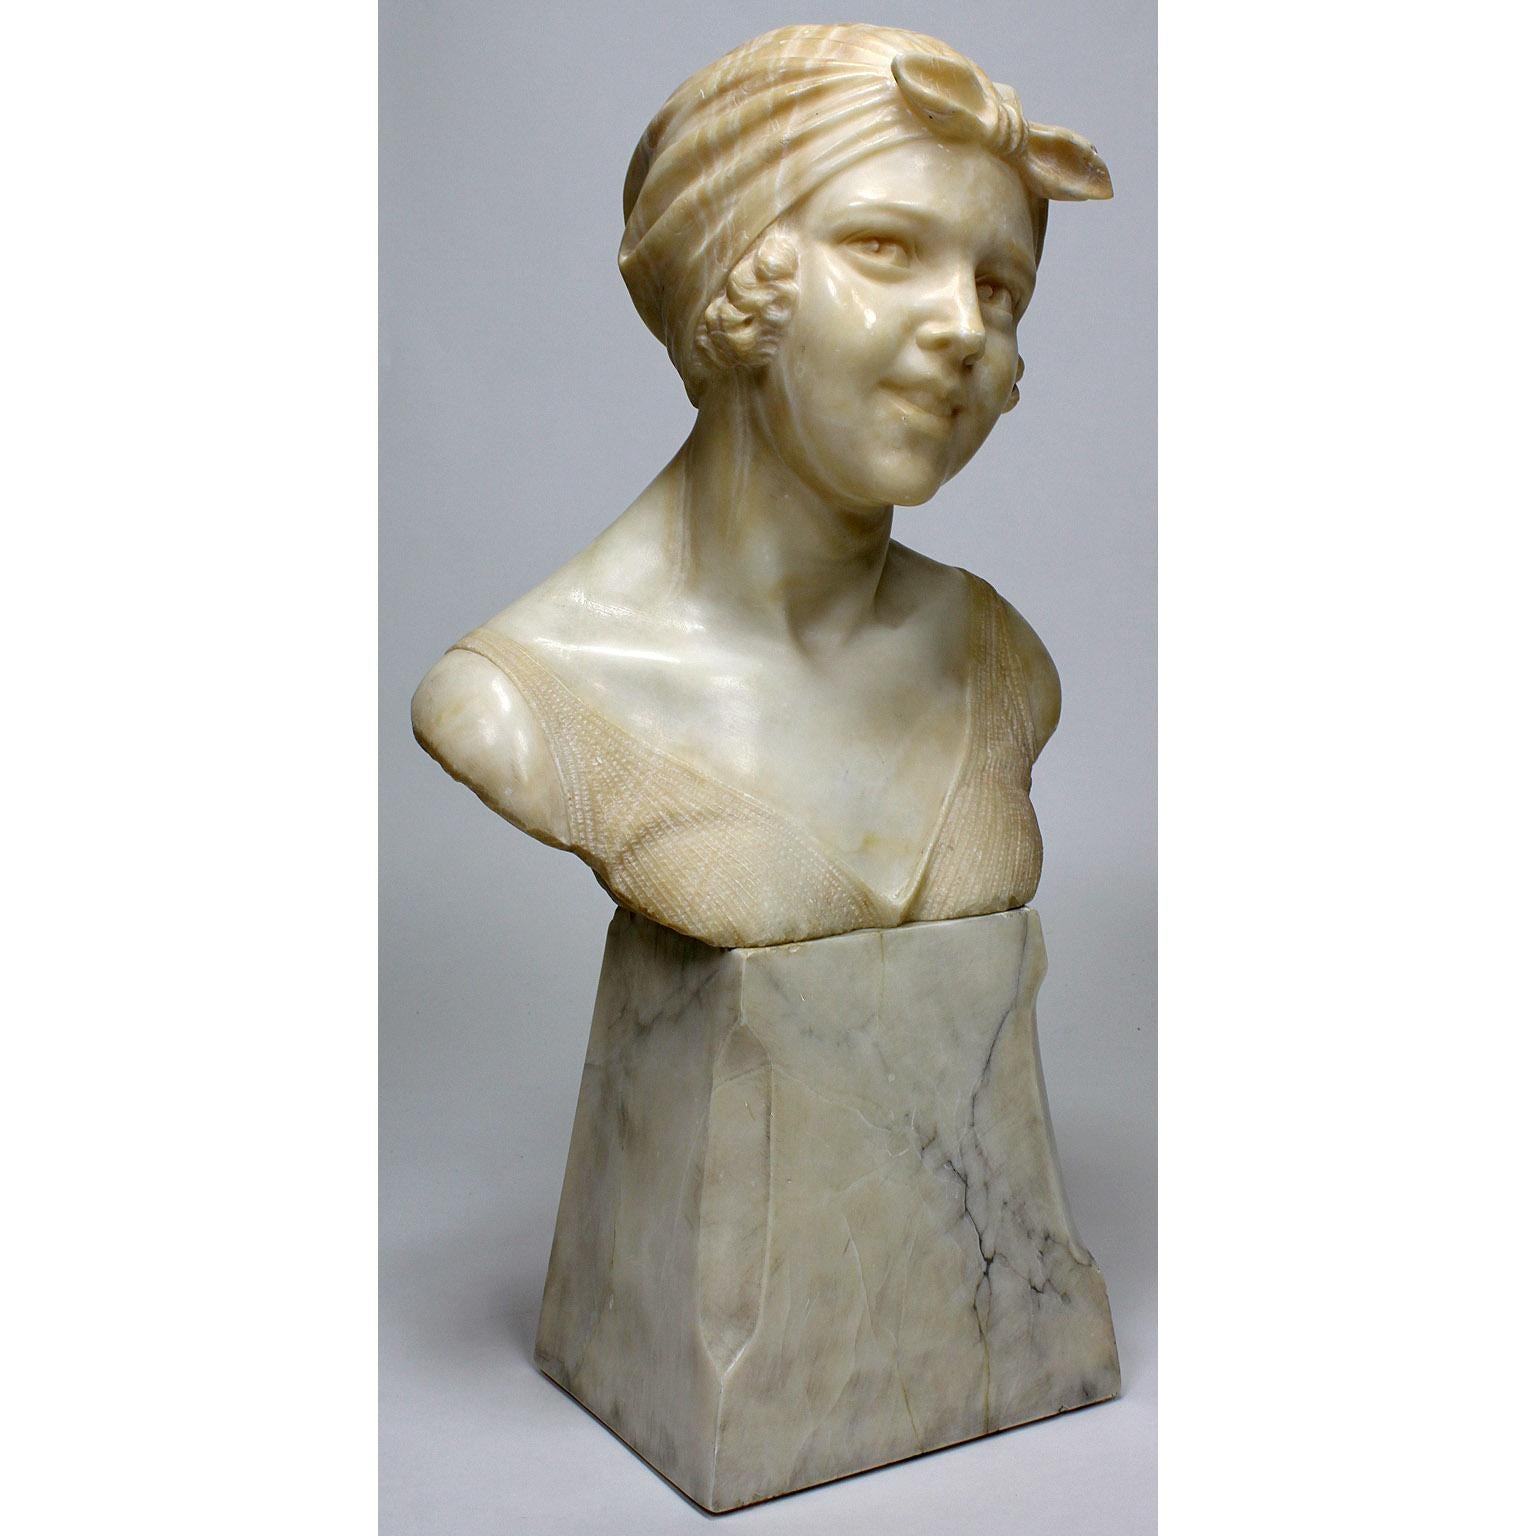 Un charmant buste italien en albâtre sculpté du 19ème-20ème siècle représentant une jeune fille. La jeune beauté pose avec un regard direct, les cheveux attachés par un bandana sur le front, vêtue d'un débardeur, posée sur un pied en albâtre effilé.